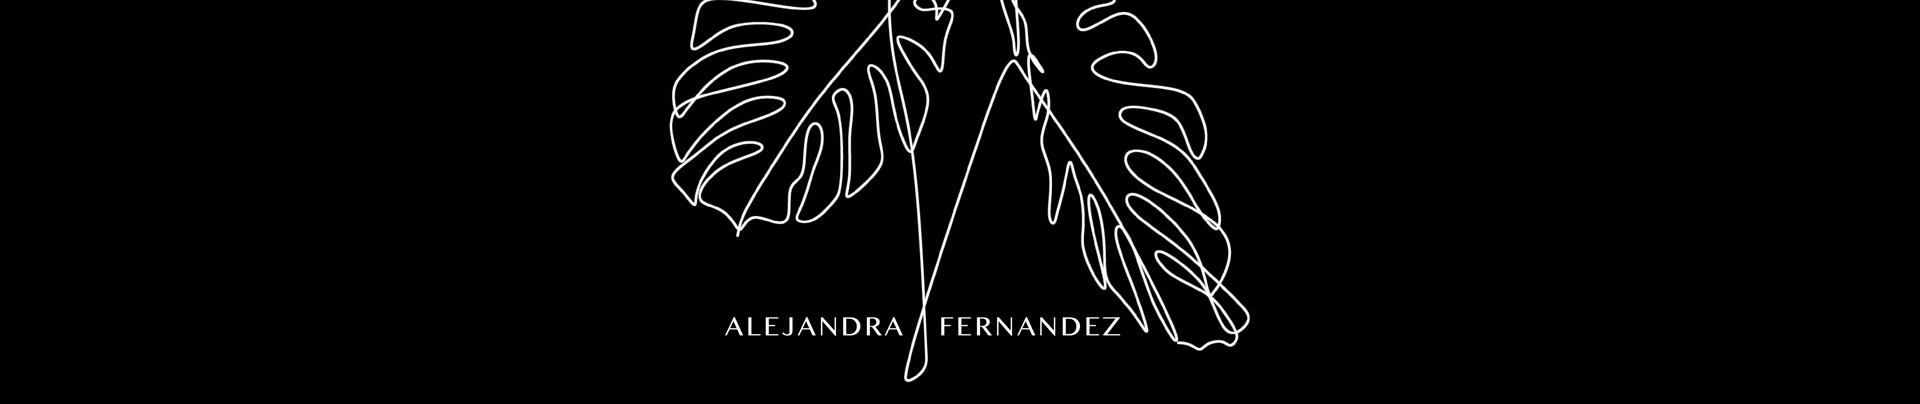 Alejandra Fernández Dávalos's profile banner